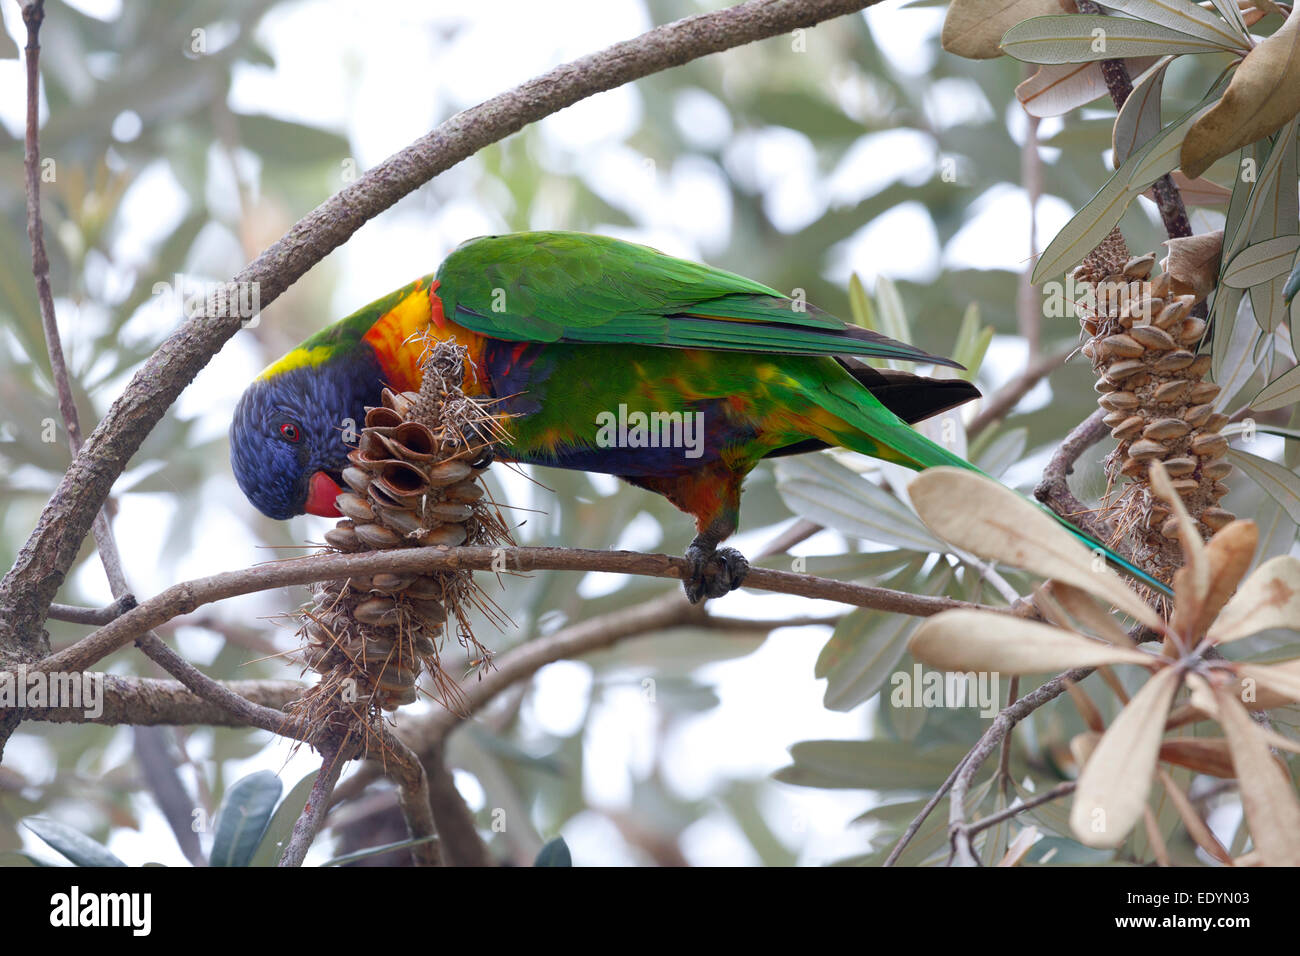 Lorikeet bird eating from a banksia nut, Australia Stock Photo